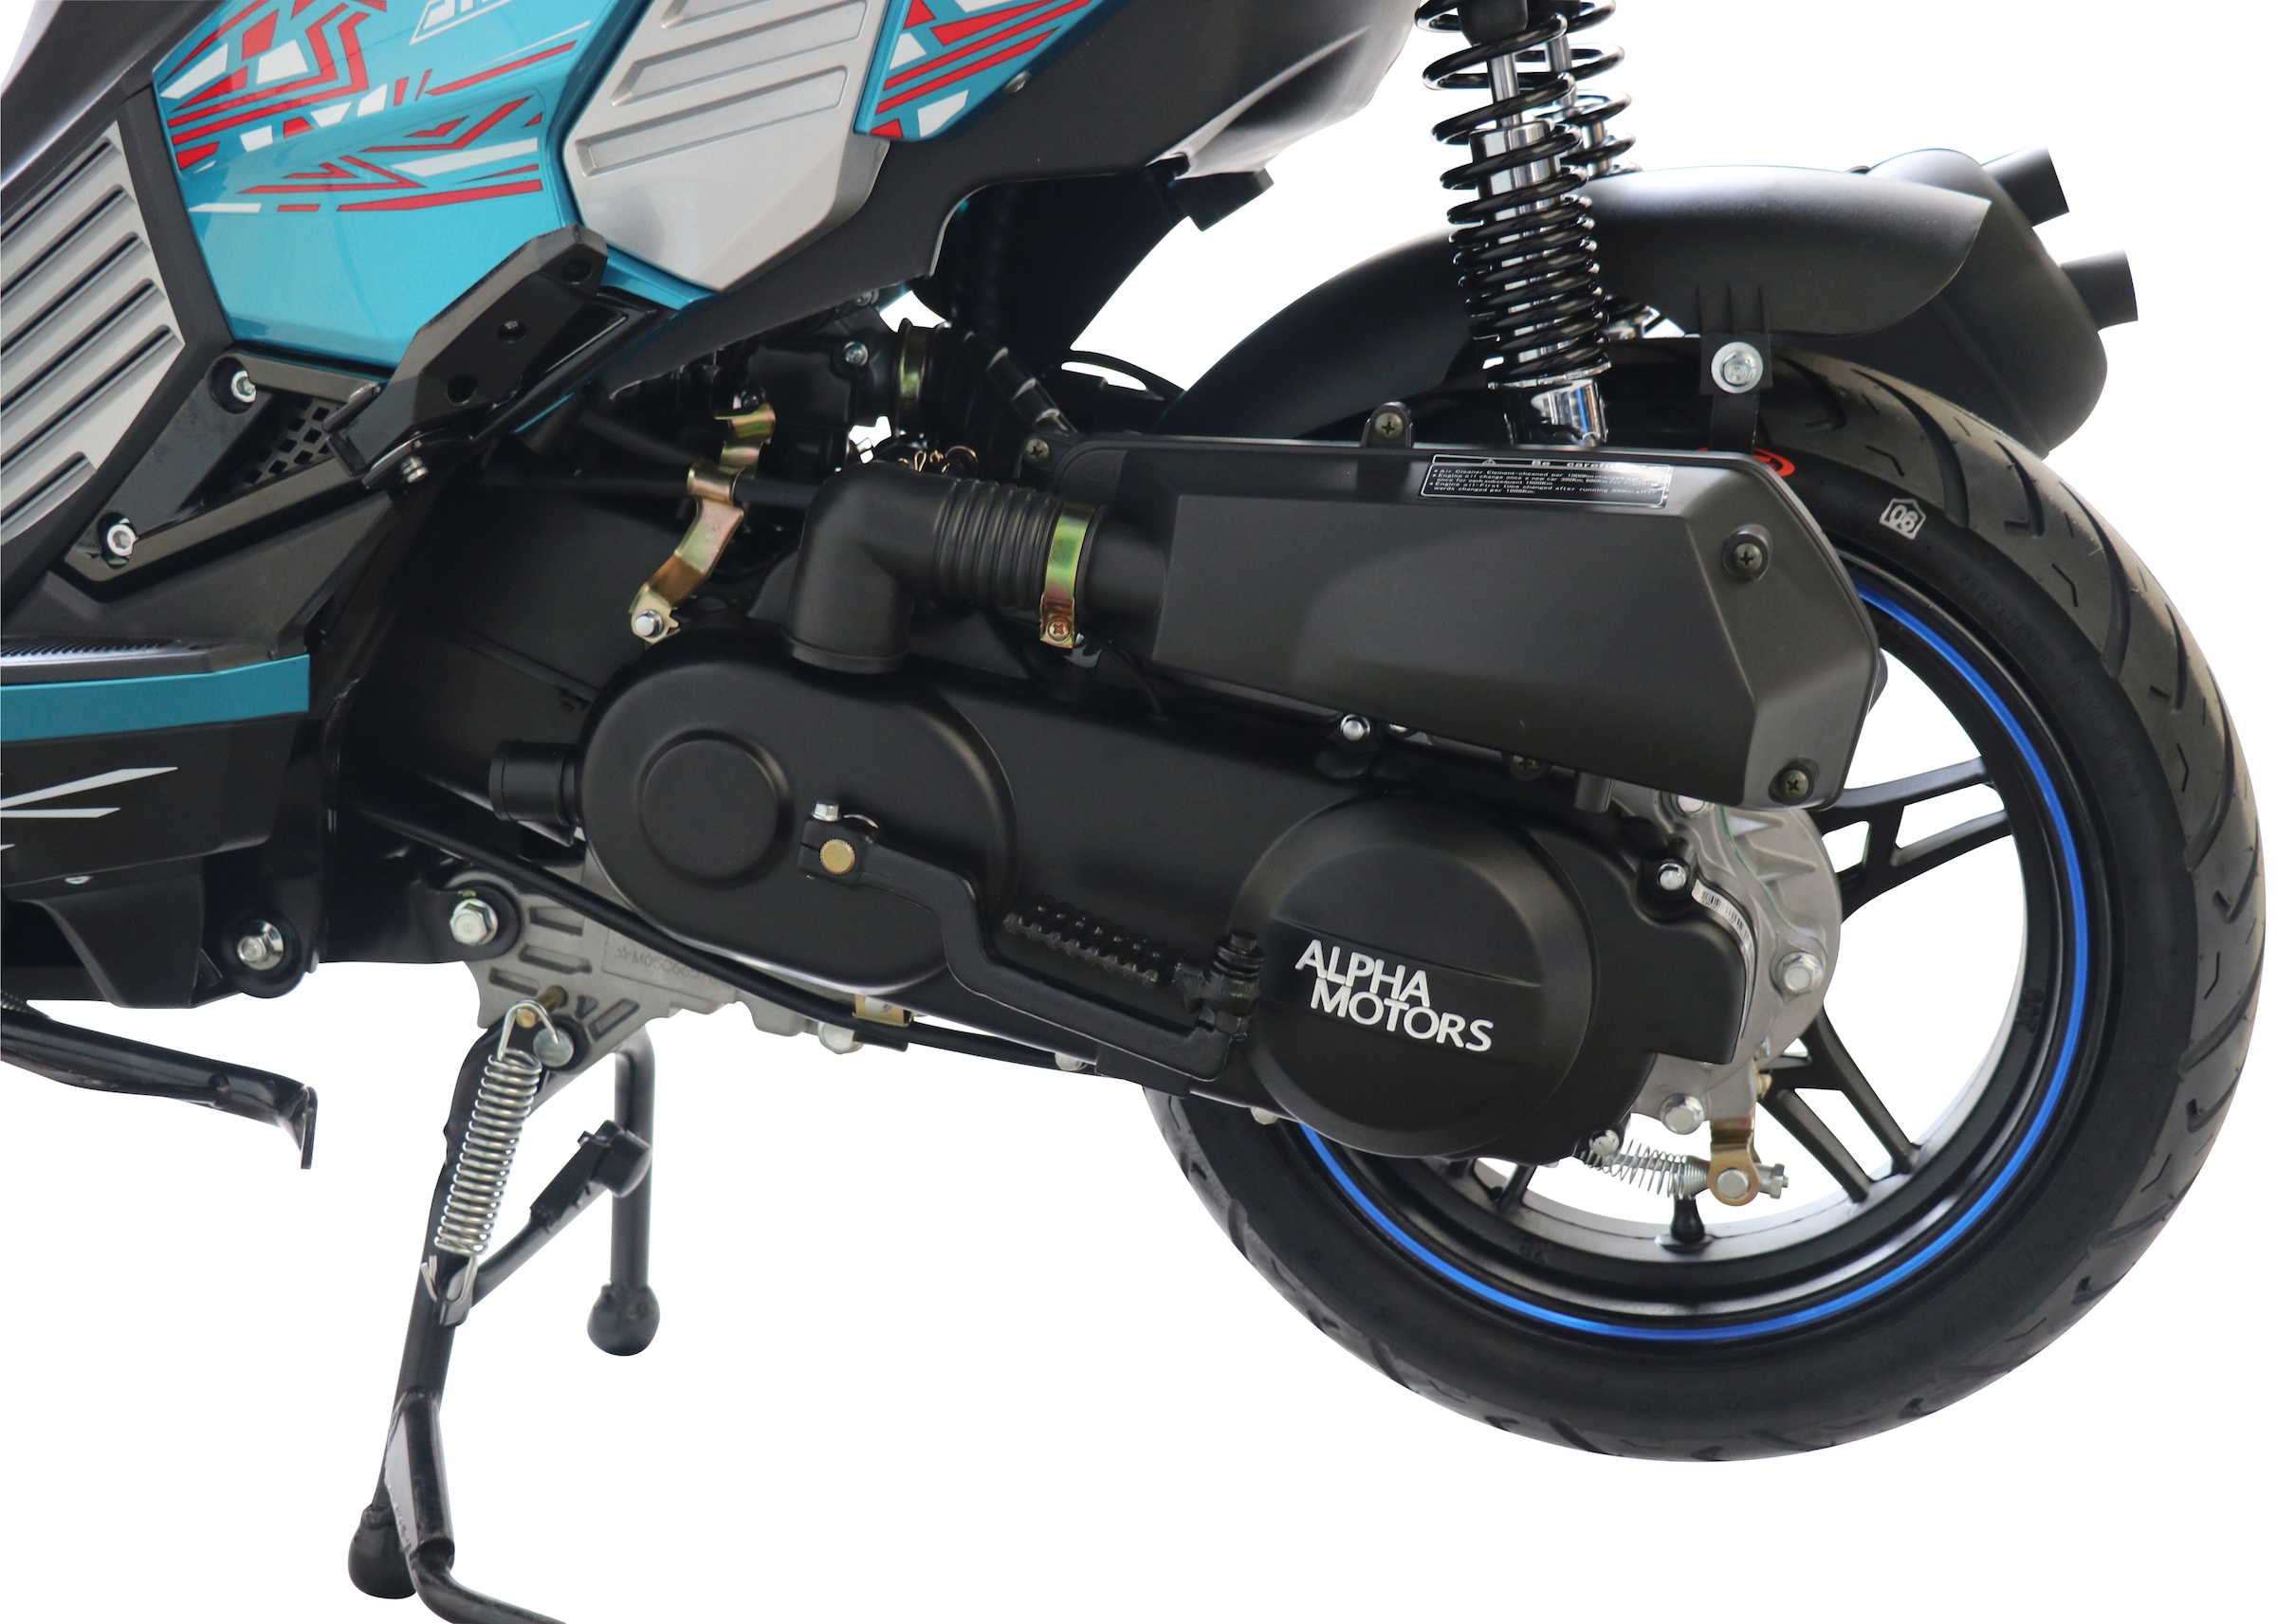 Alpha Motors Motorroller »SHARK«, 50 cm³, 45 km/h, Euro 5, 3 PS, mit integr. Alarmanlage, Keyless-System und USB-Anschluss